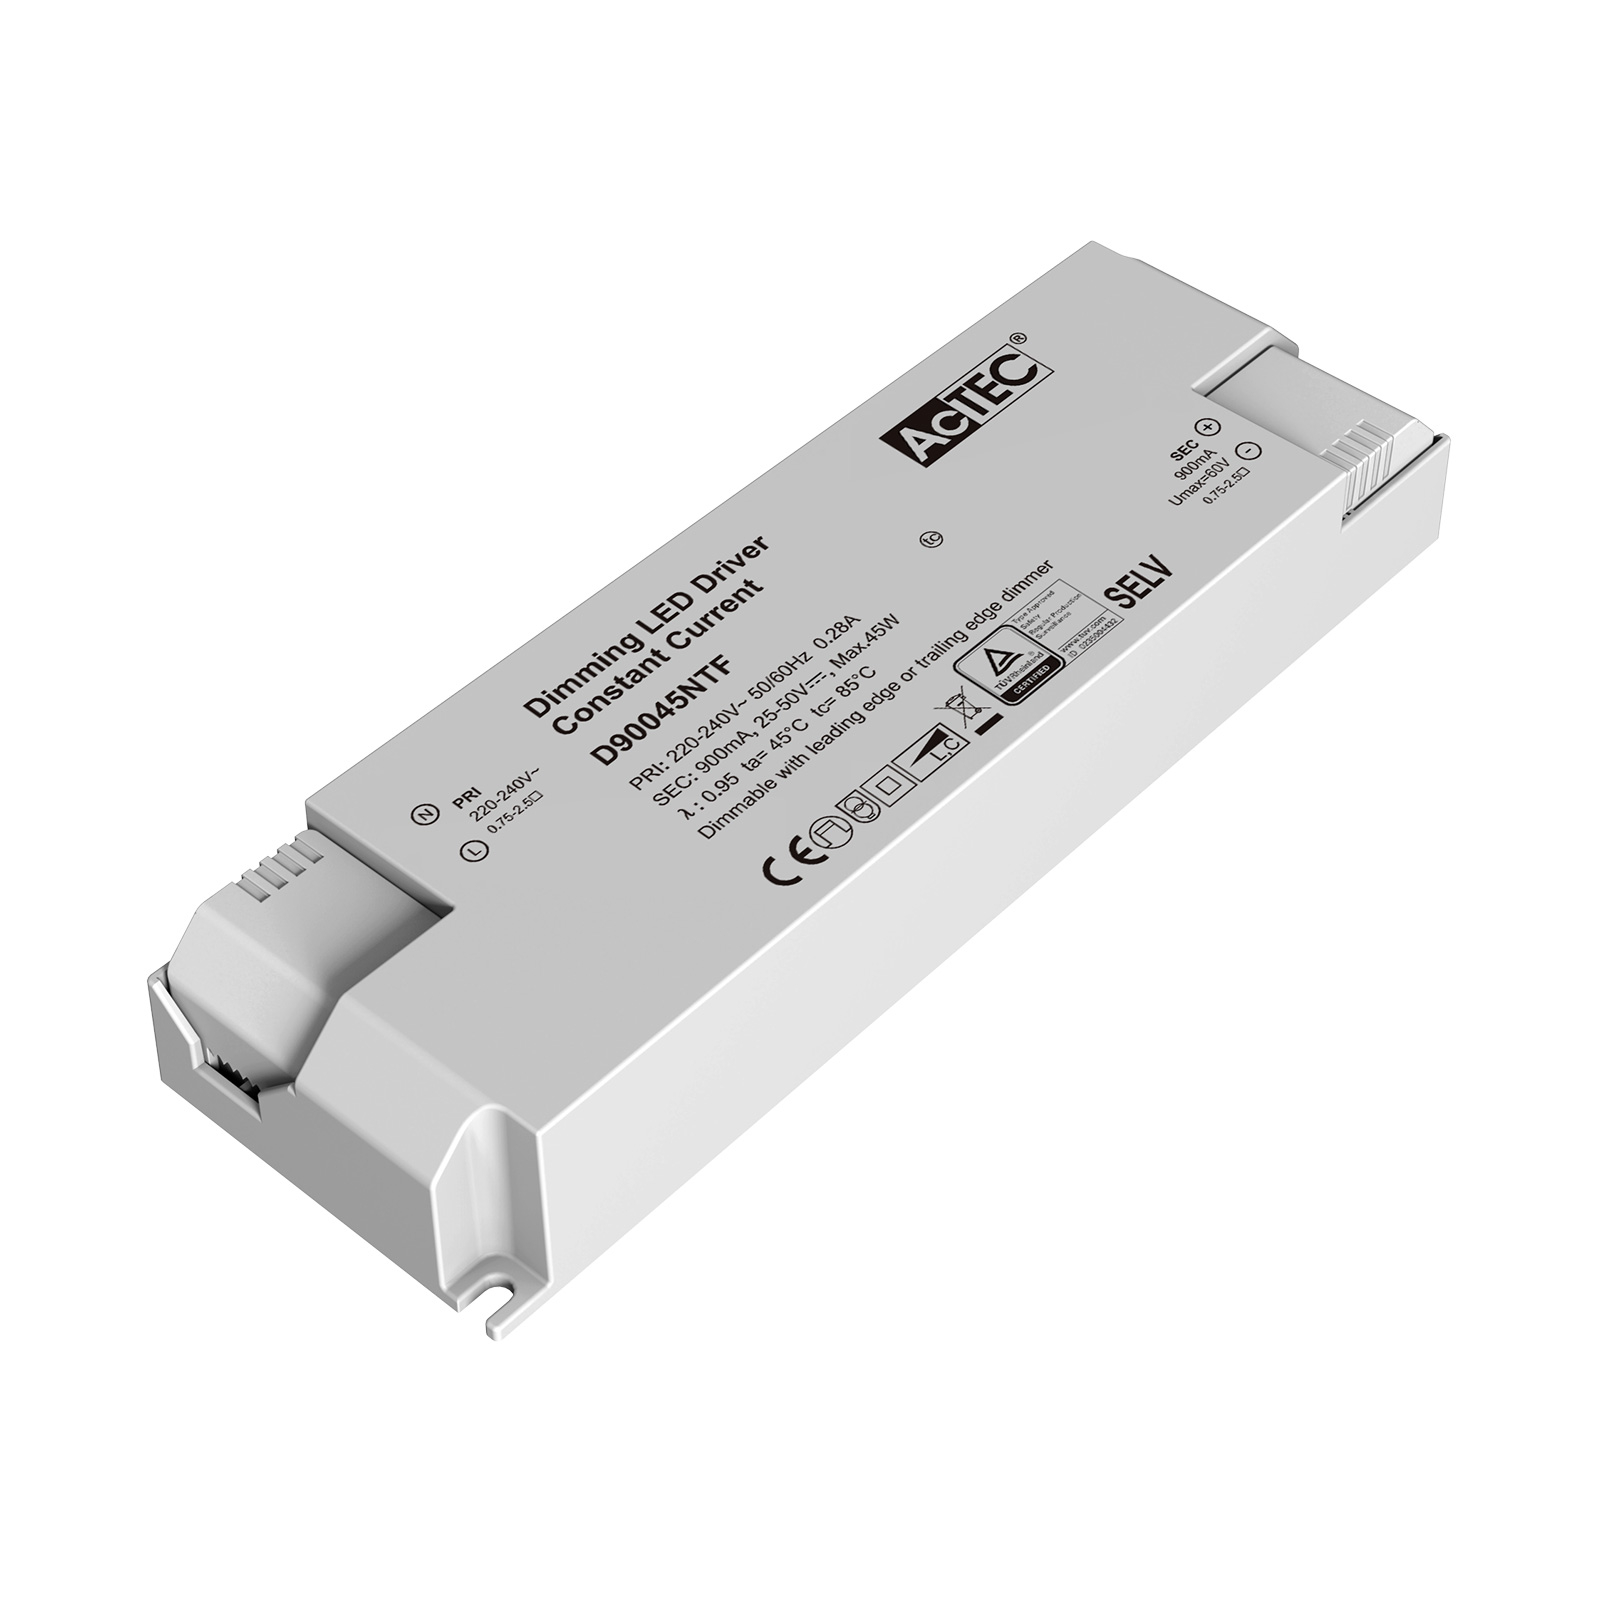 AcTEC Triac LED ovladač CC max. 45W 900mA